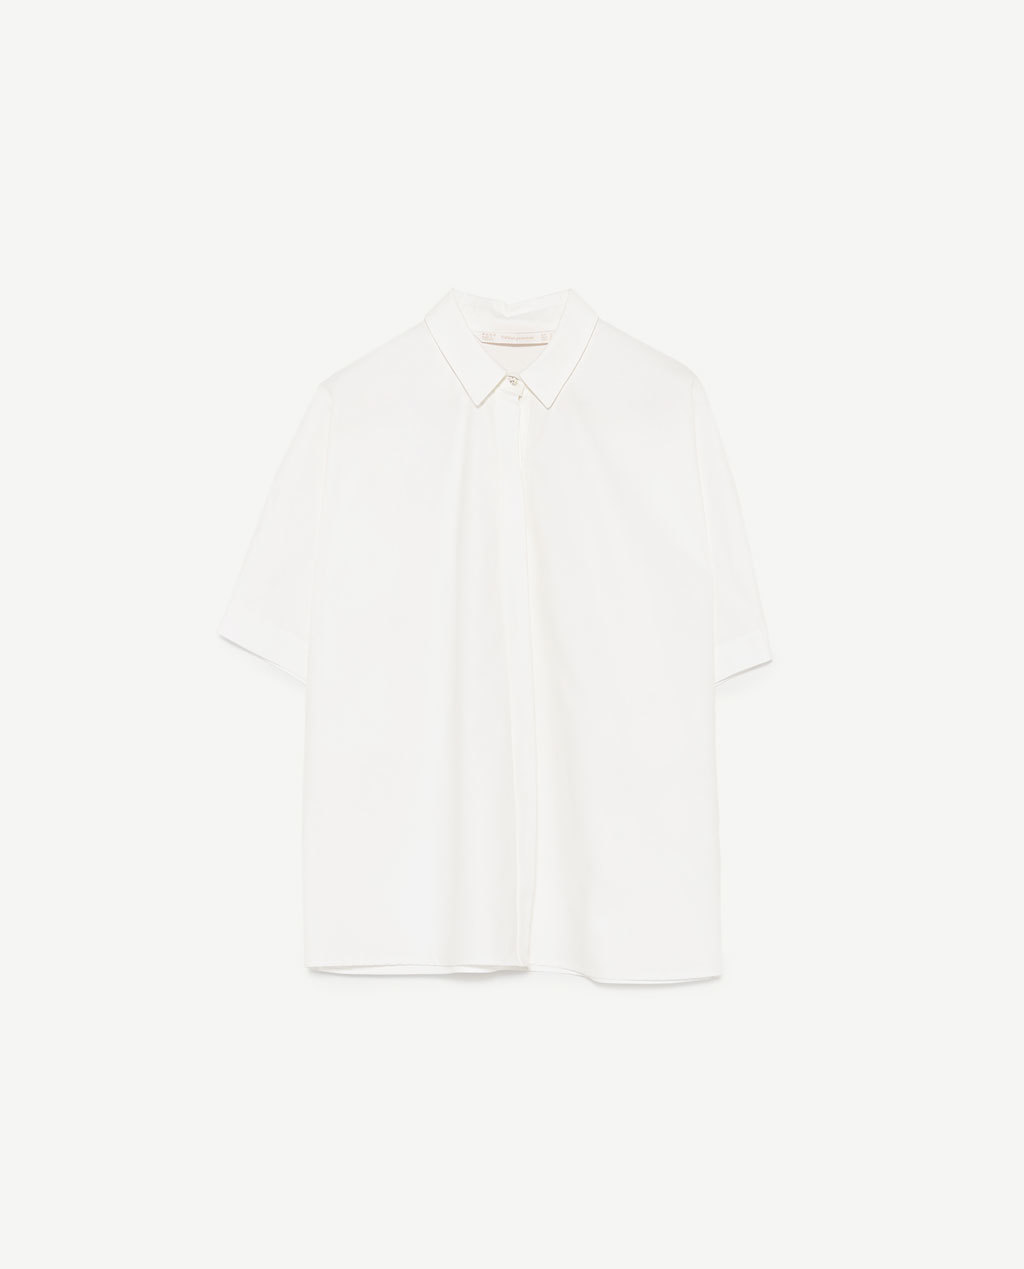 Camisa blanca. De Zara (22,95 euros).